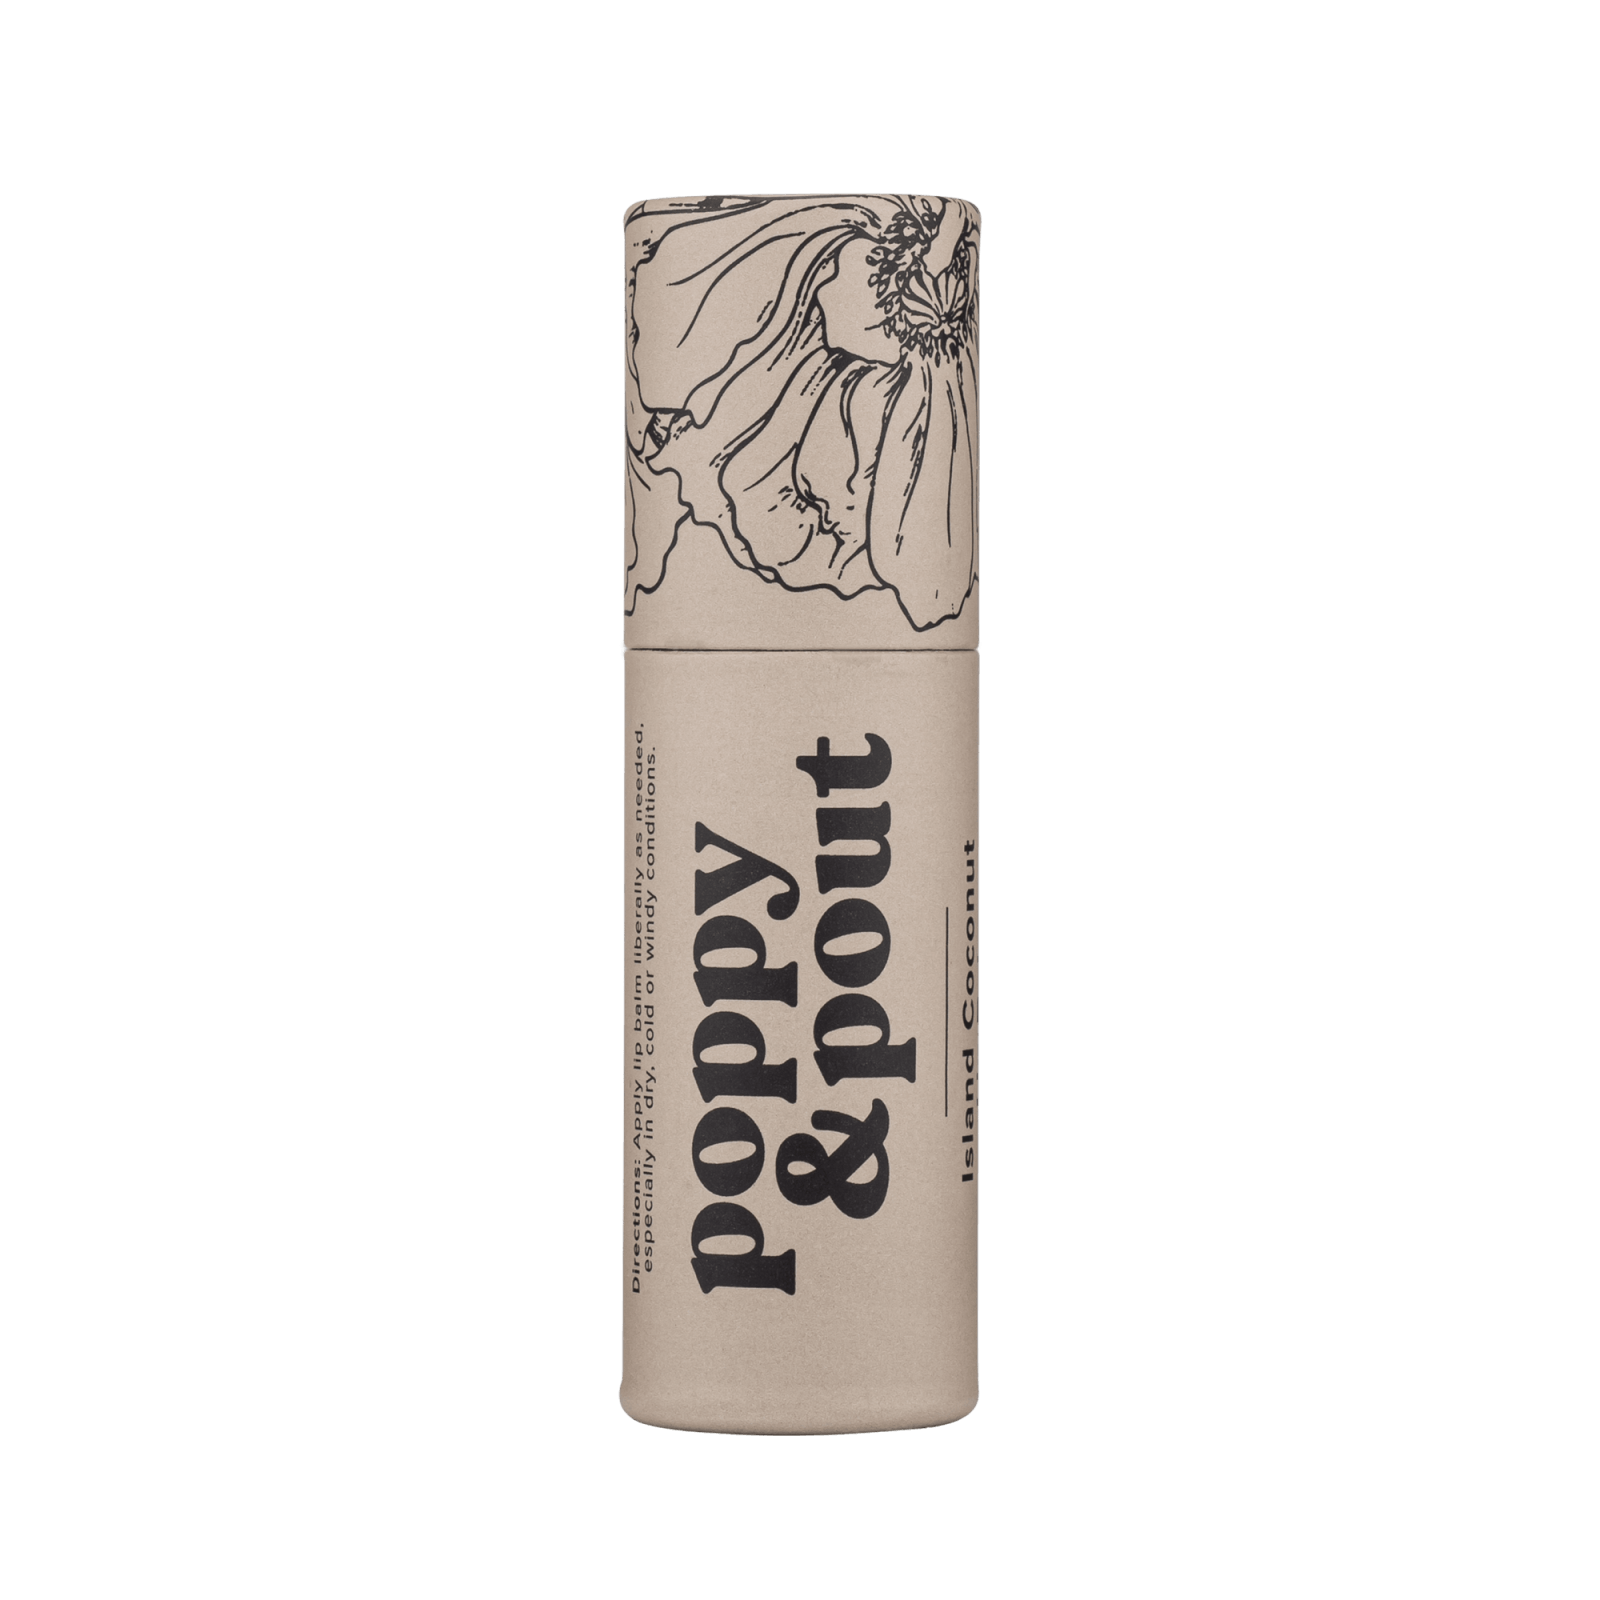 Poppy & Pout - Lip Balm - Island Coconut